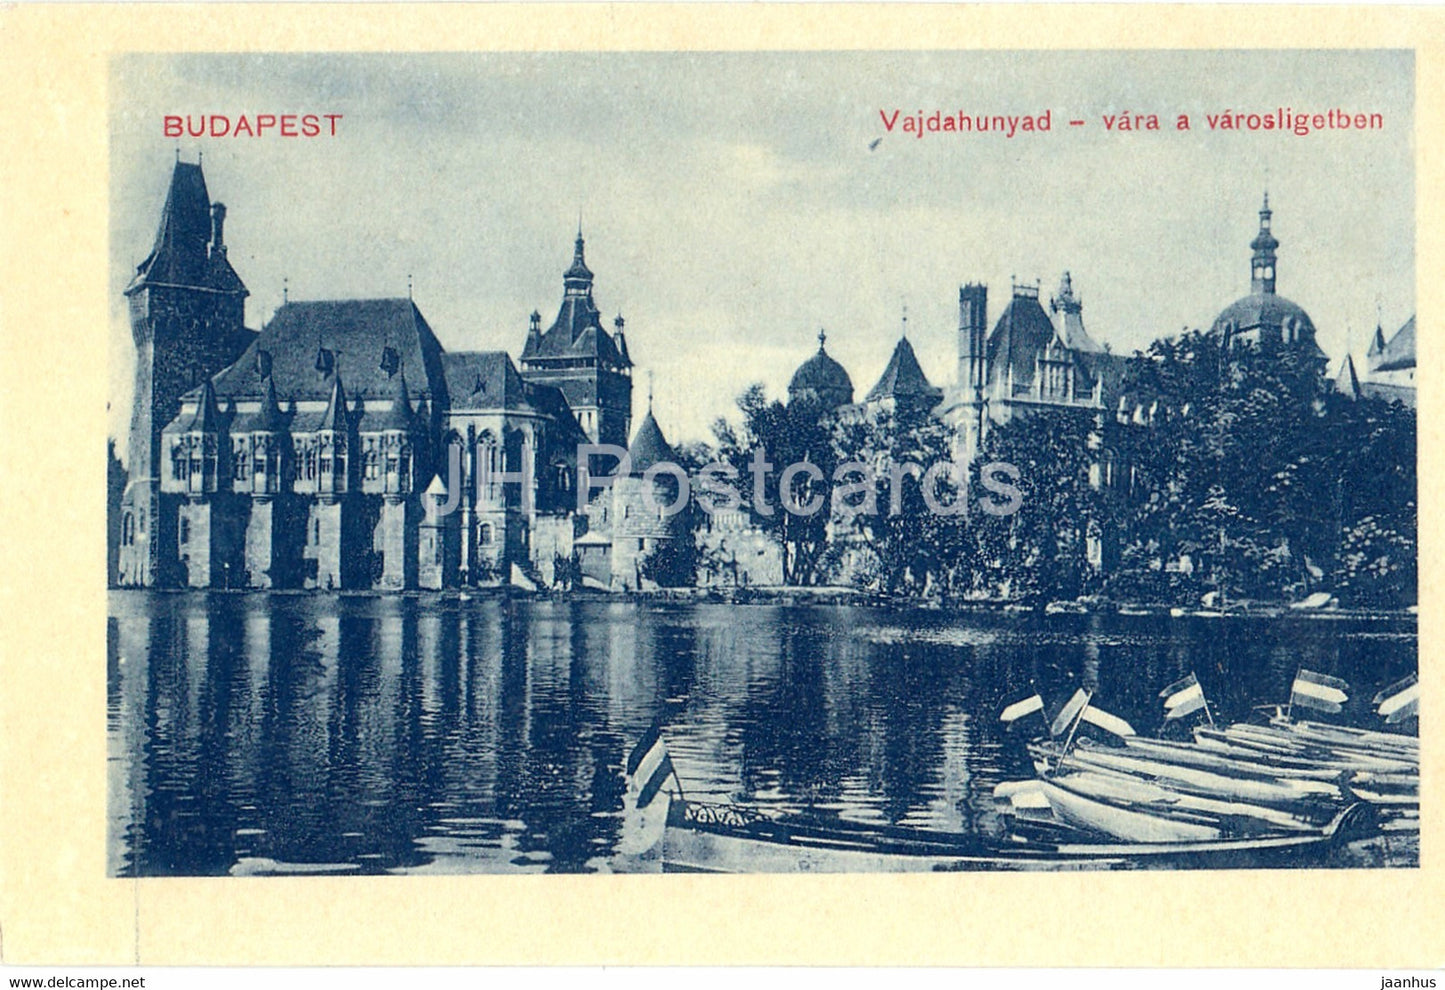 Budapest - Vajdahunyad - vara a varosligetben - 19086 - old postcard - Hungary - unused - JH Postcards